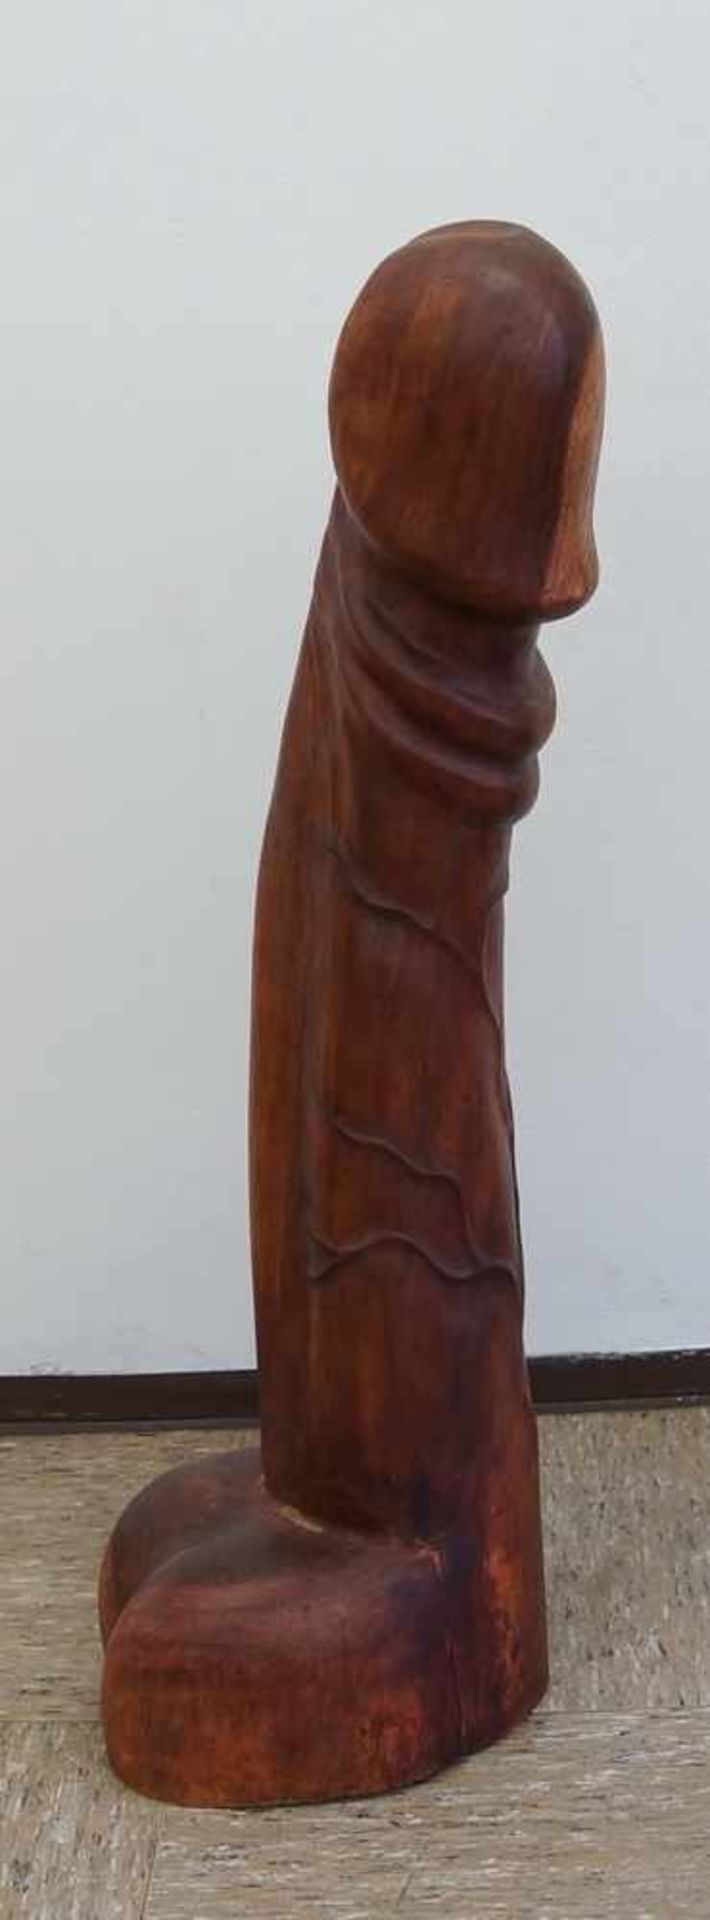 Grosser Phallus, Holz geschnitzt, H 98cm - Bild 4 aus 4